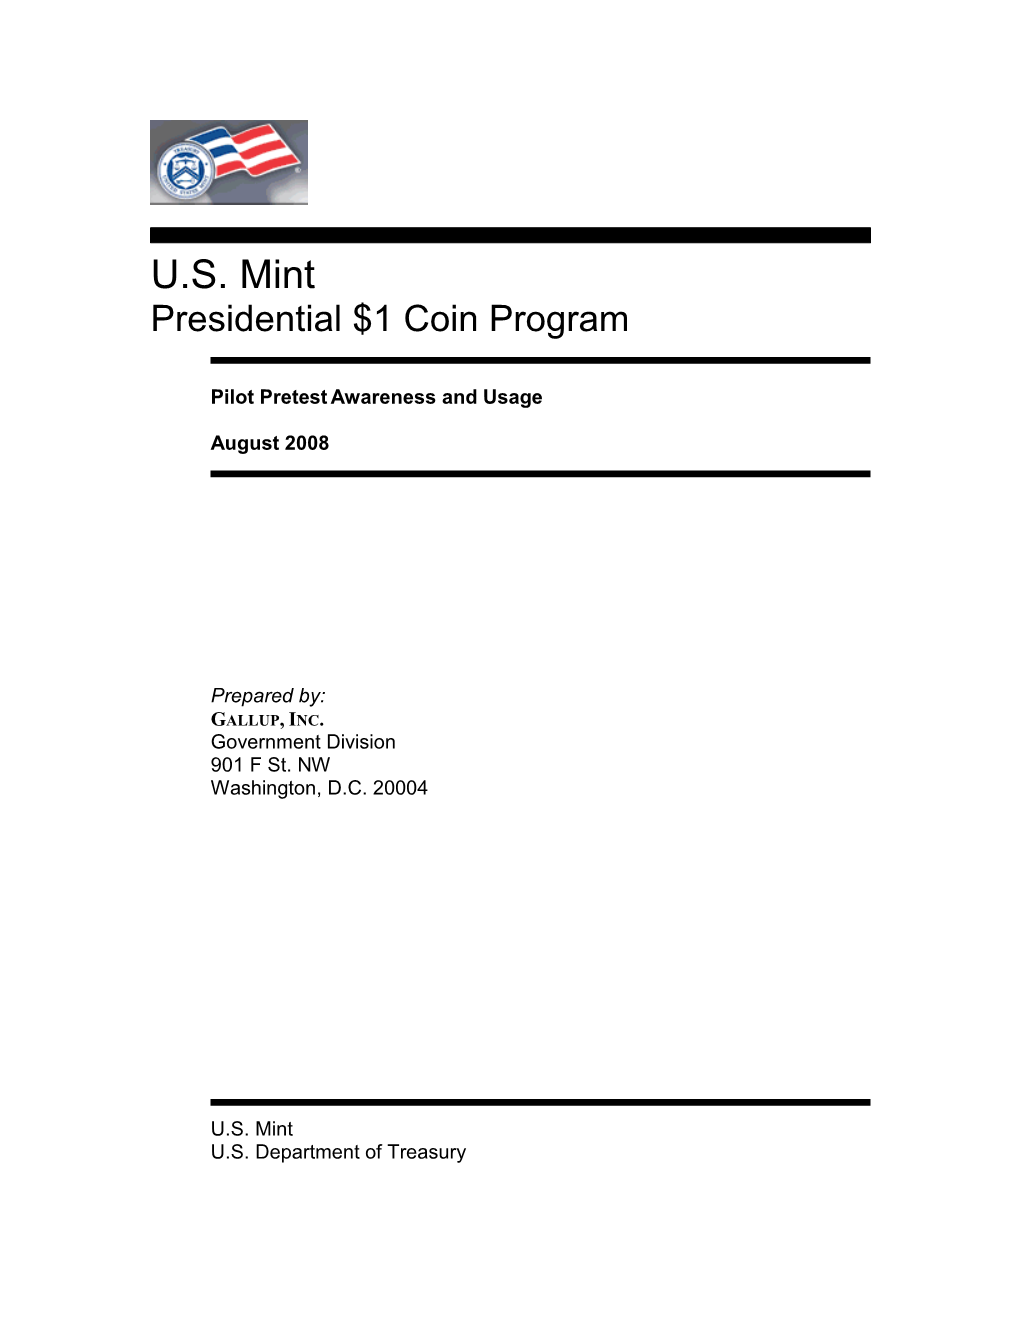 Presidential $1 Coin Program